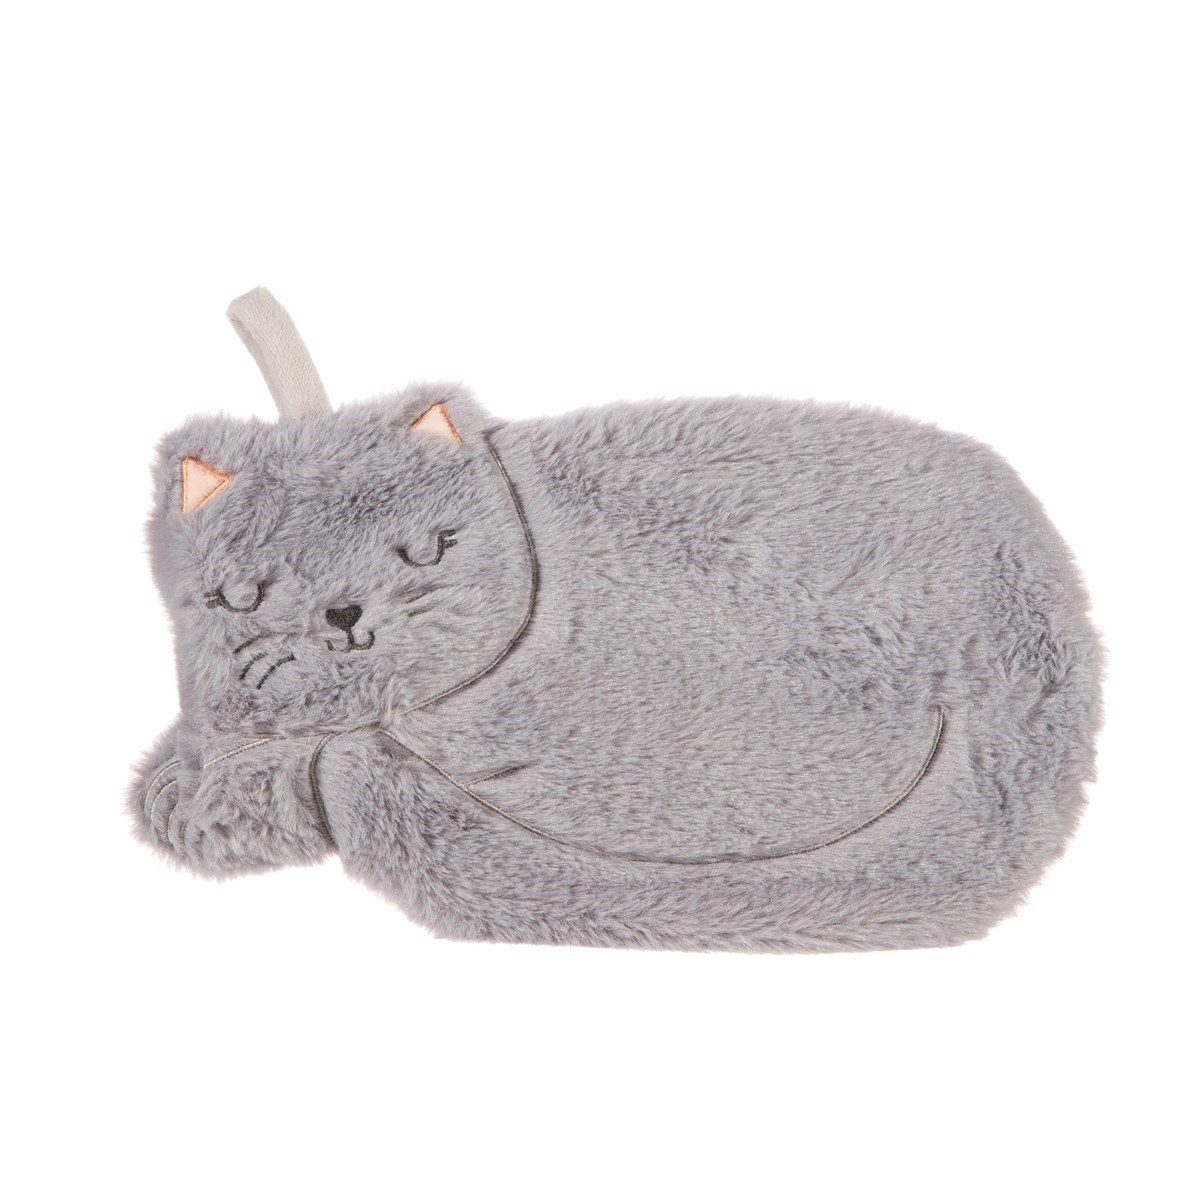 Sass & Belle Wärmflasche Katze, (Bezug grau, Kätzchen, Bettflasche, 2-tlg., ca. 20 x 30 cm), mit gemütlichen Vibes, perfekt für abendliches Kuscheln